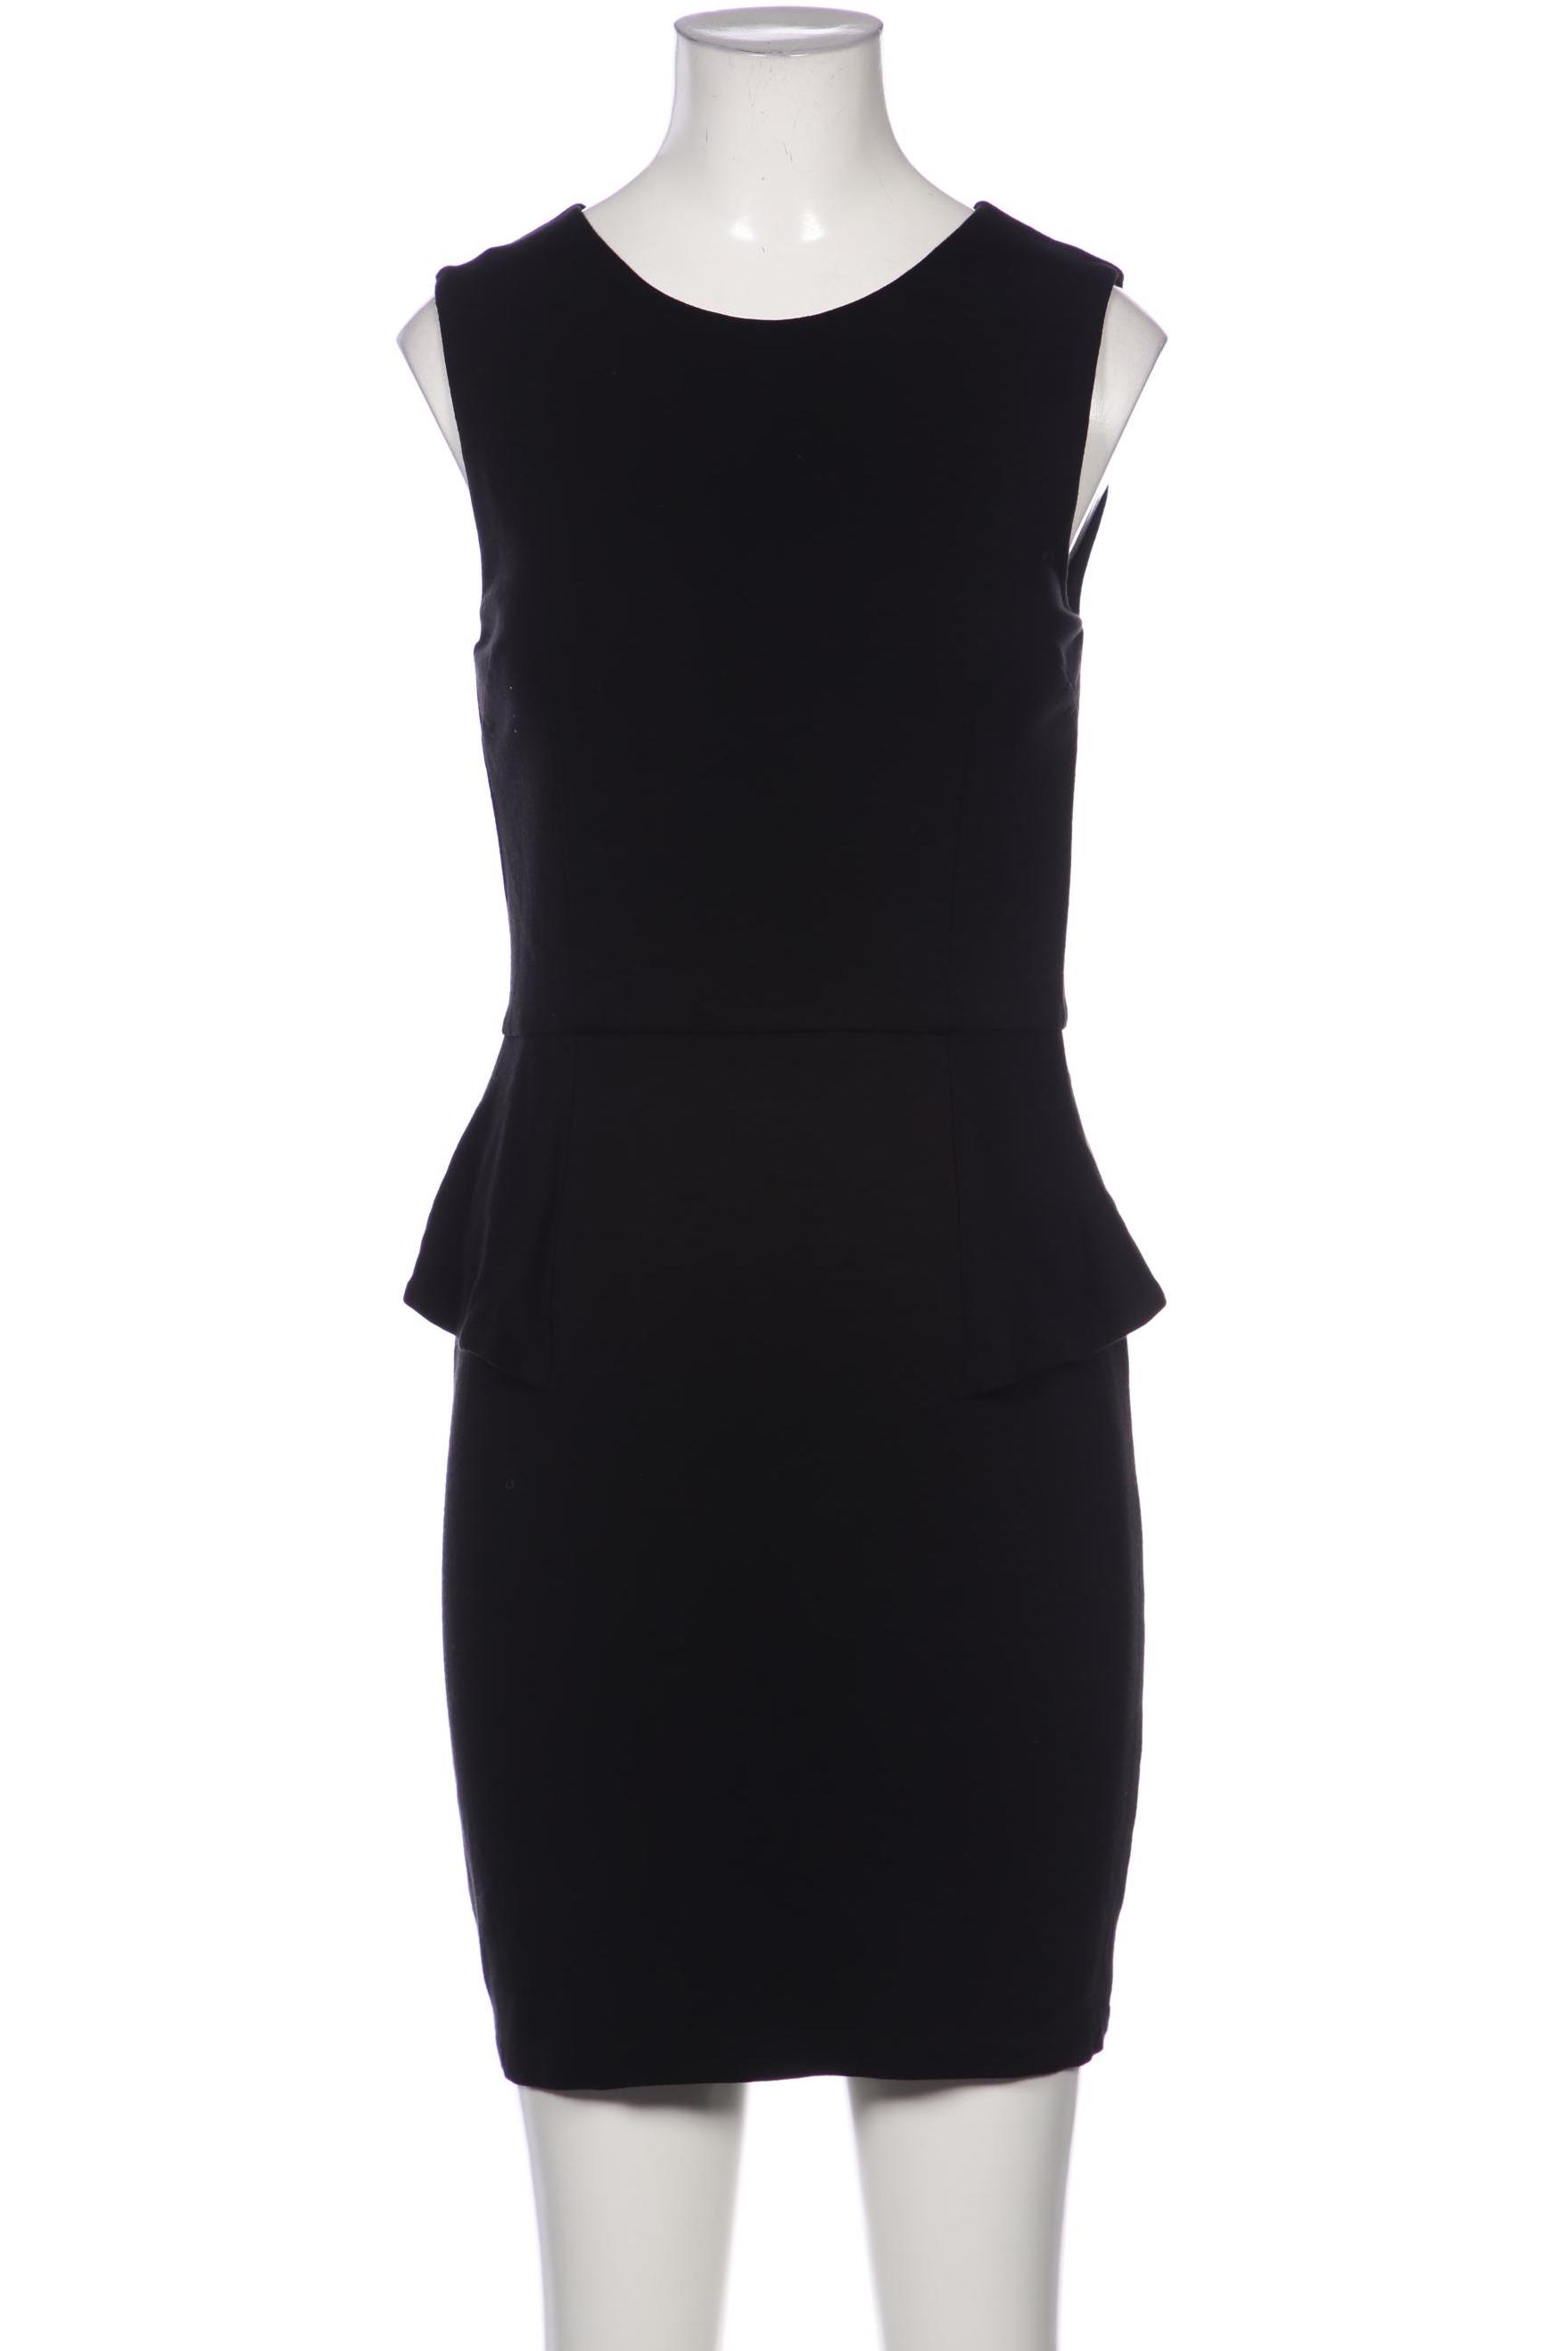 Stefanel Damen Kleid, schwarz, Gr. 38 von Stefanel